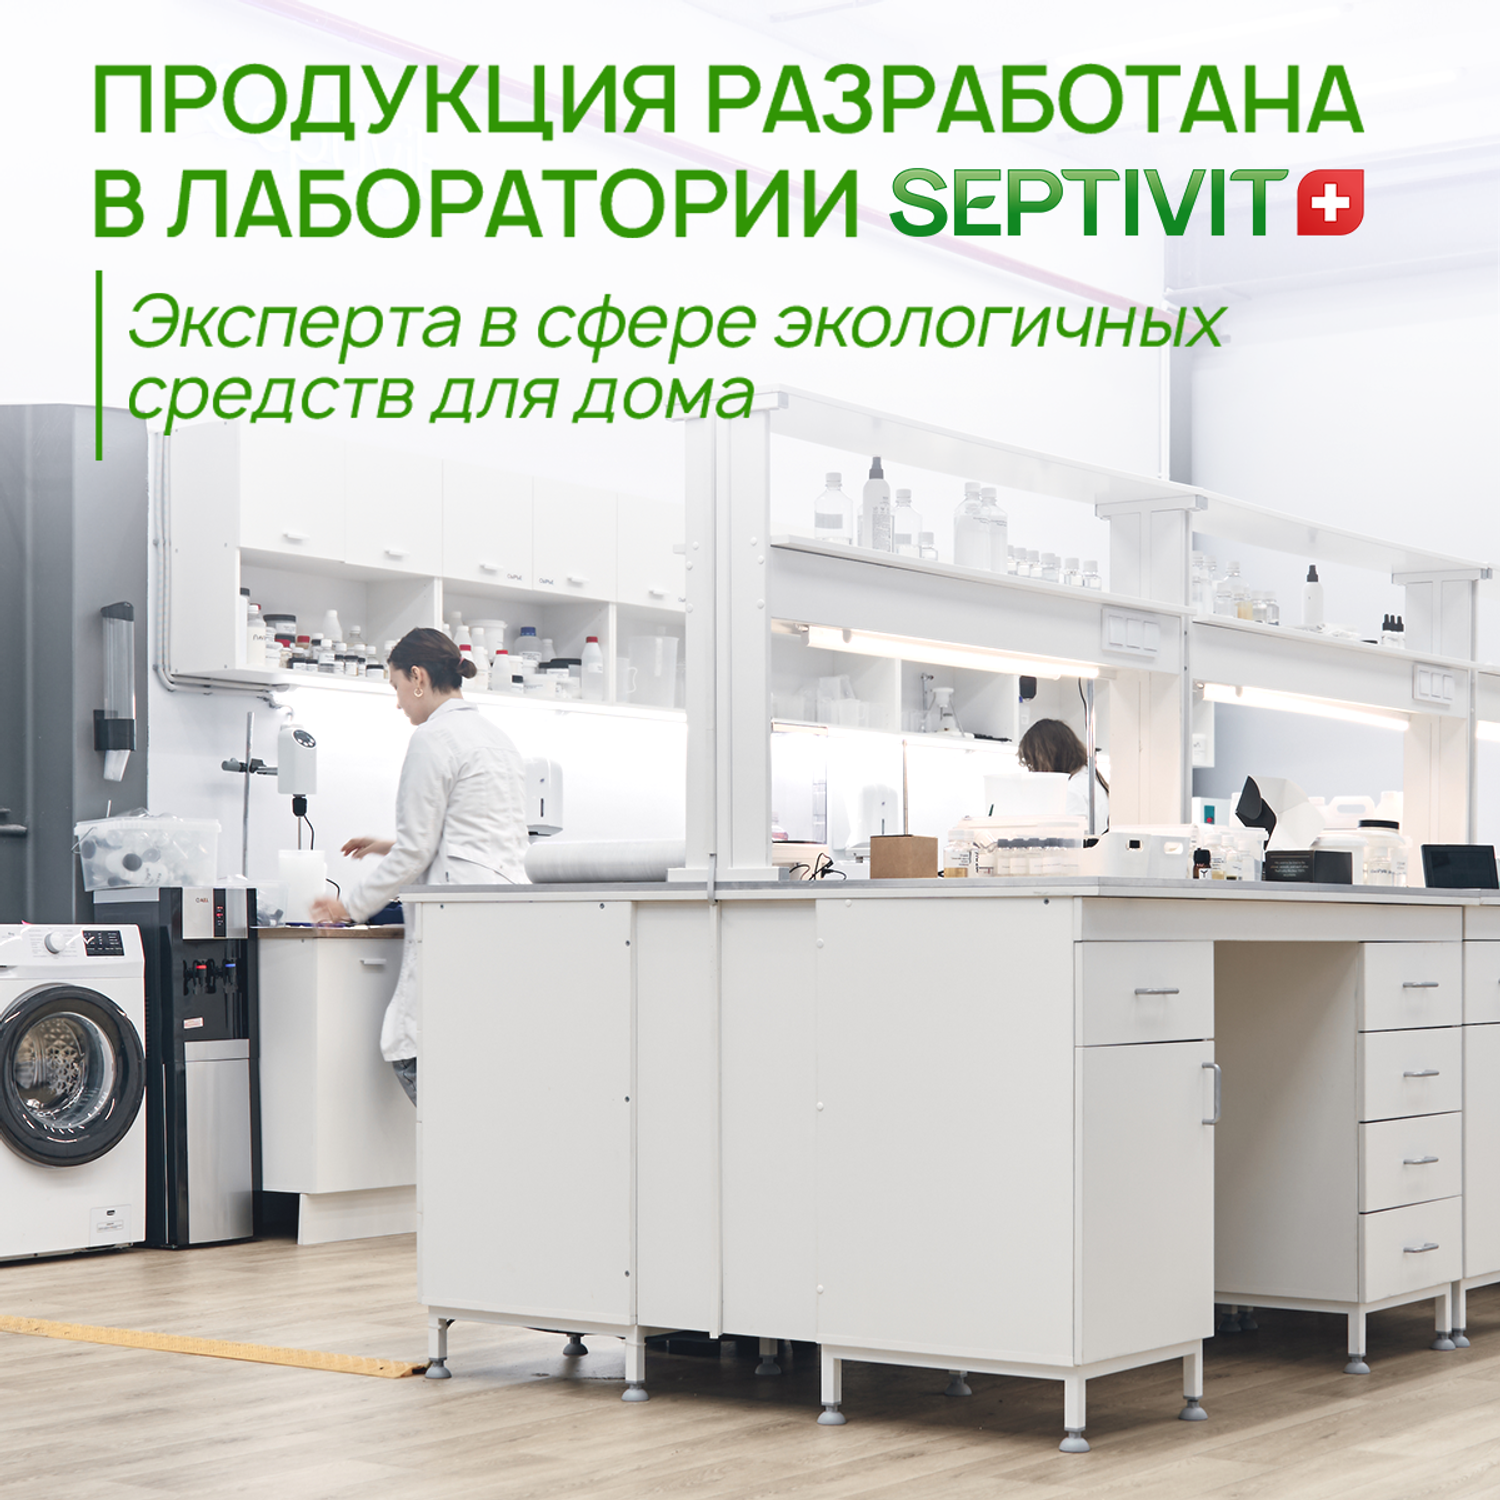 Средство для мытья посуды SEPTIVIT Premium Сочный цитрус 5л - фото 9